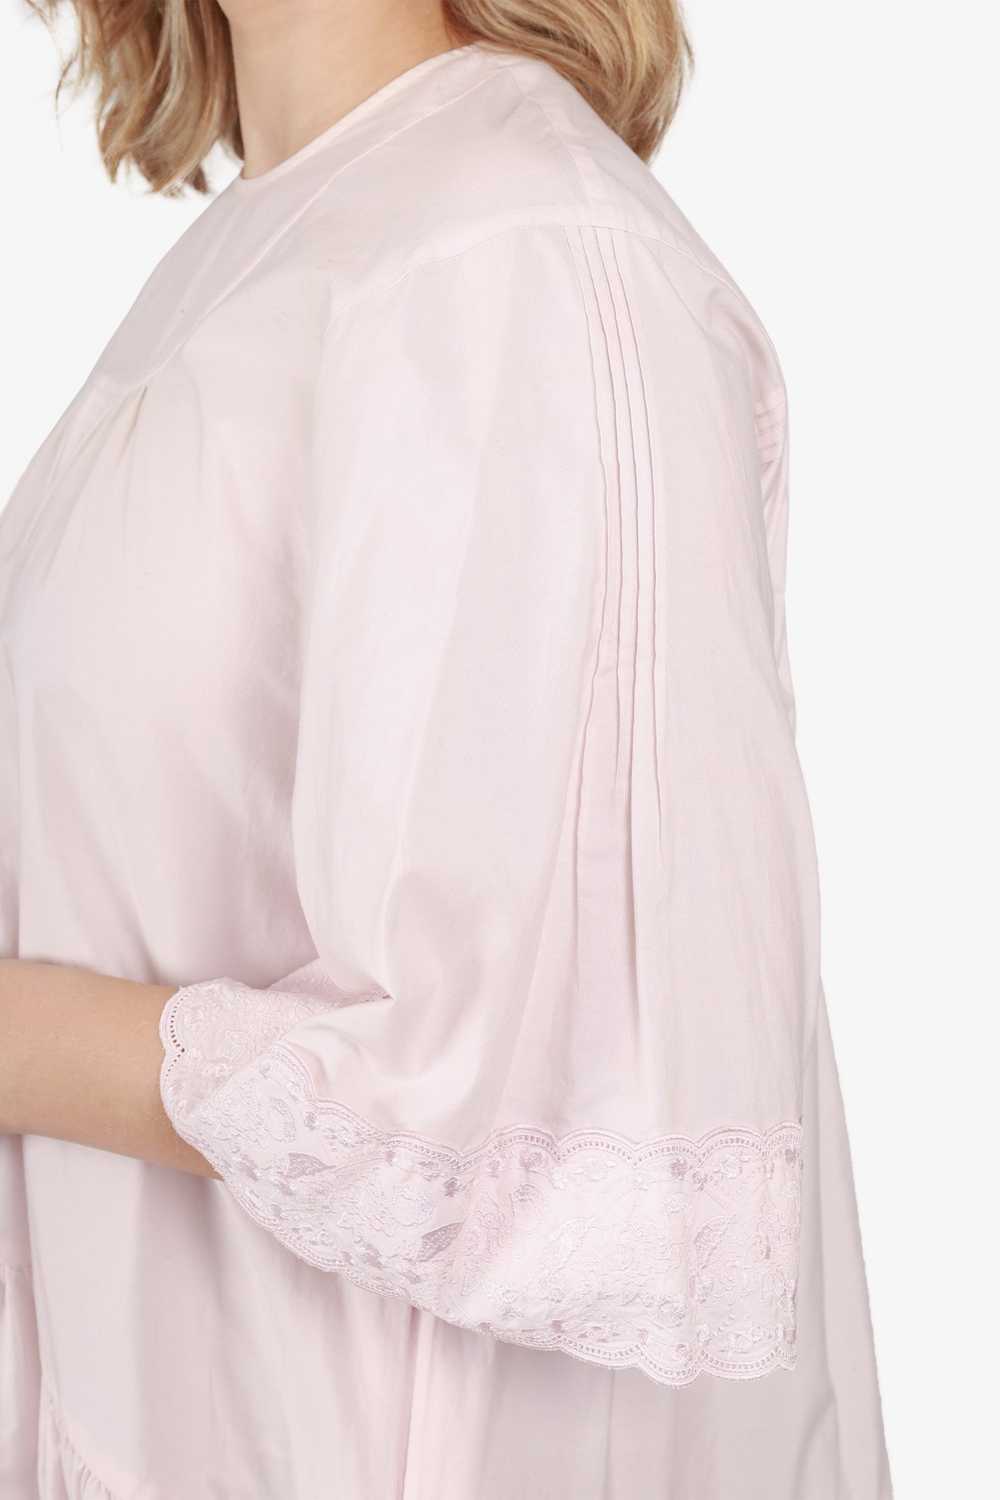 Simone Rocha Pink Lace Drop Waist Dress Size 6 - image 3